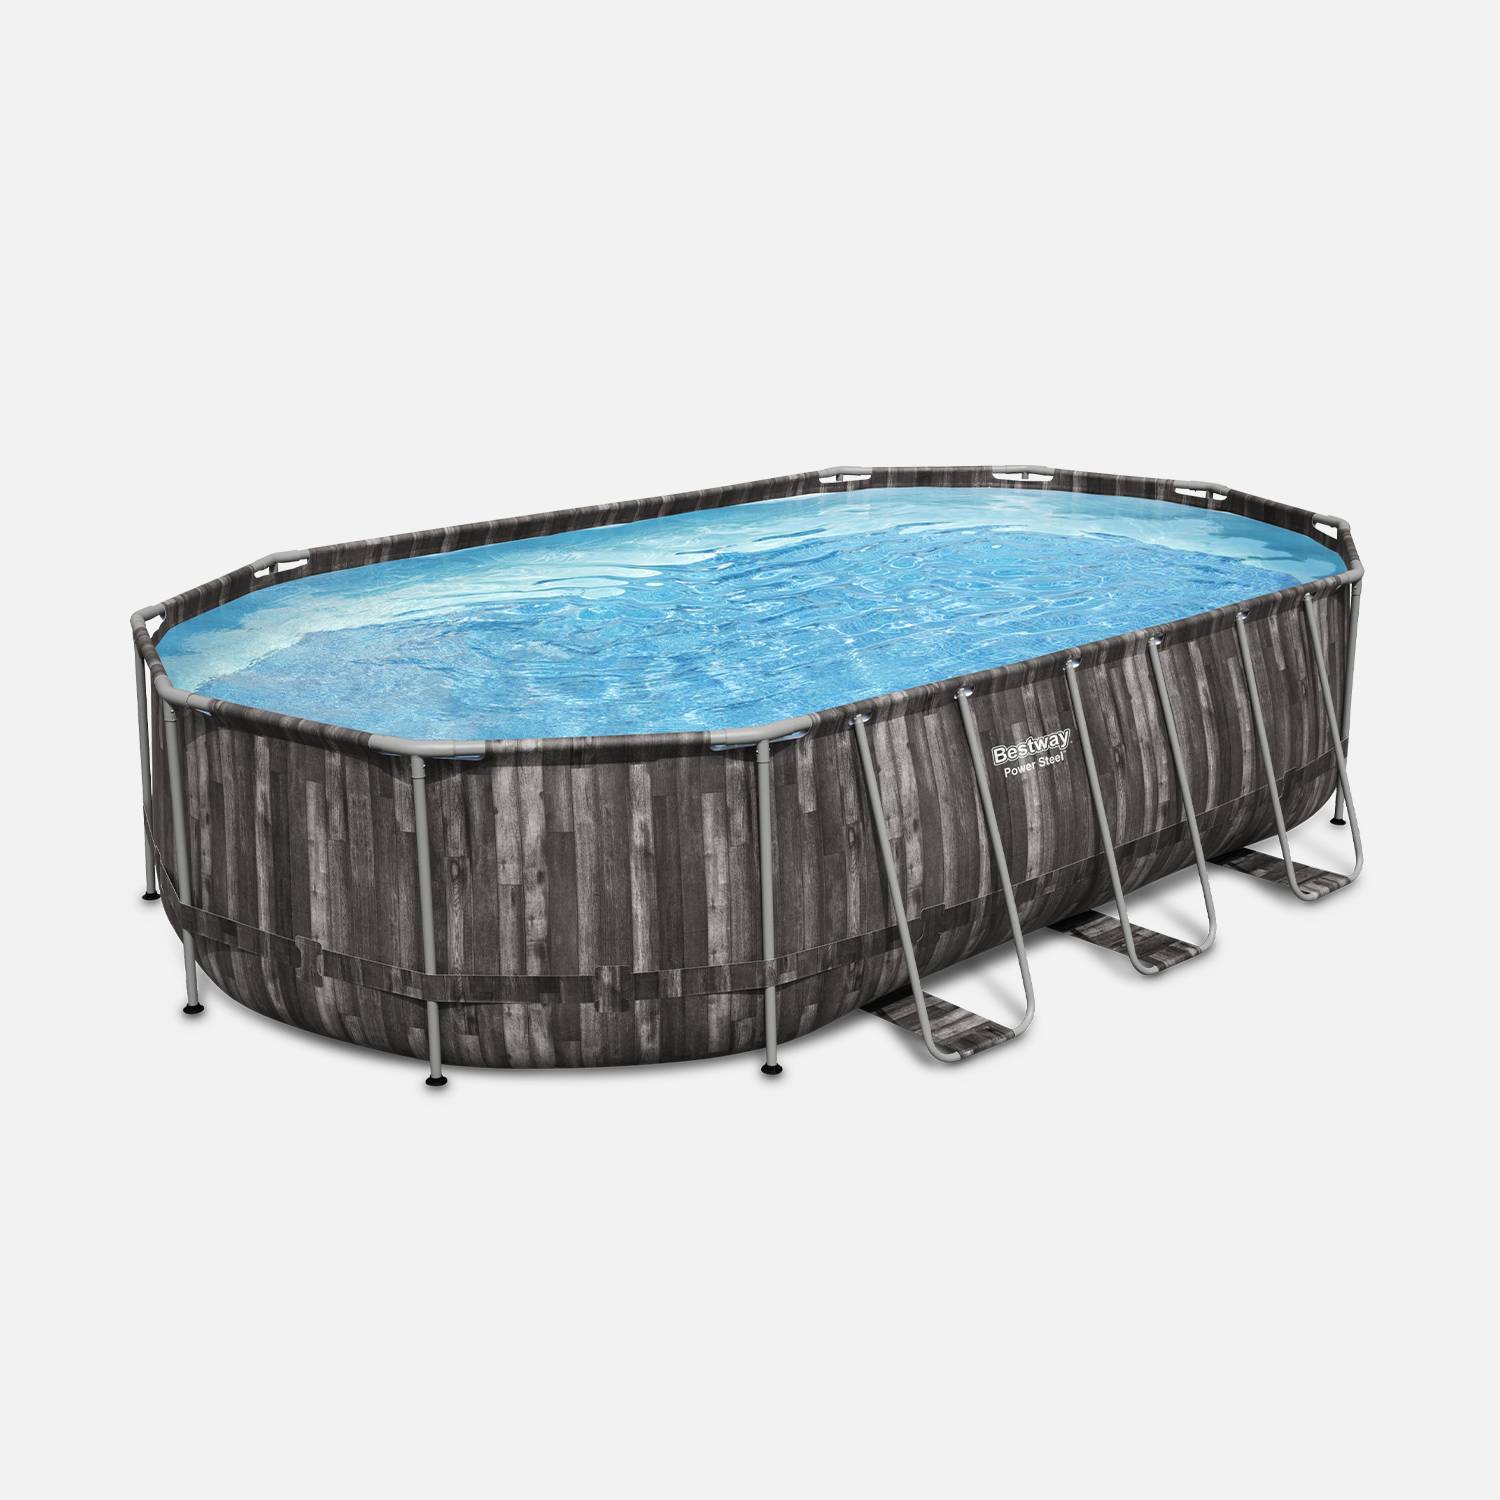 Kit piscine géante complet BESTWAY – Spinelle – piscine ovale tubulaire 6x3 m motif aspect bois, pompe de filtration, échelle, bâche de protection, diffuseur ChemConnect Photo4